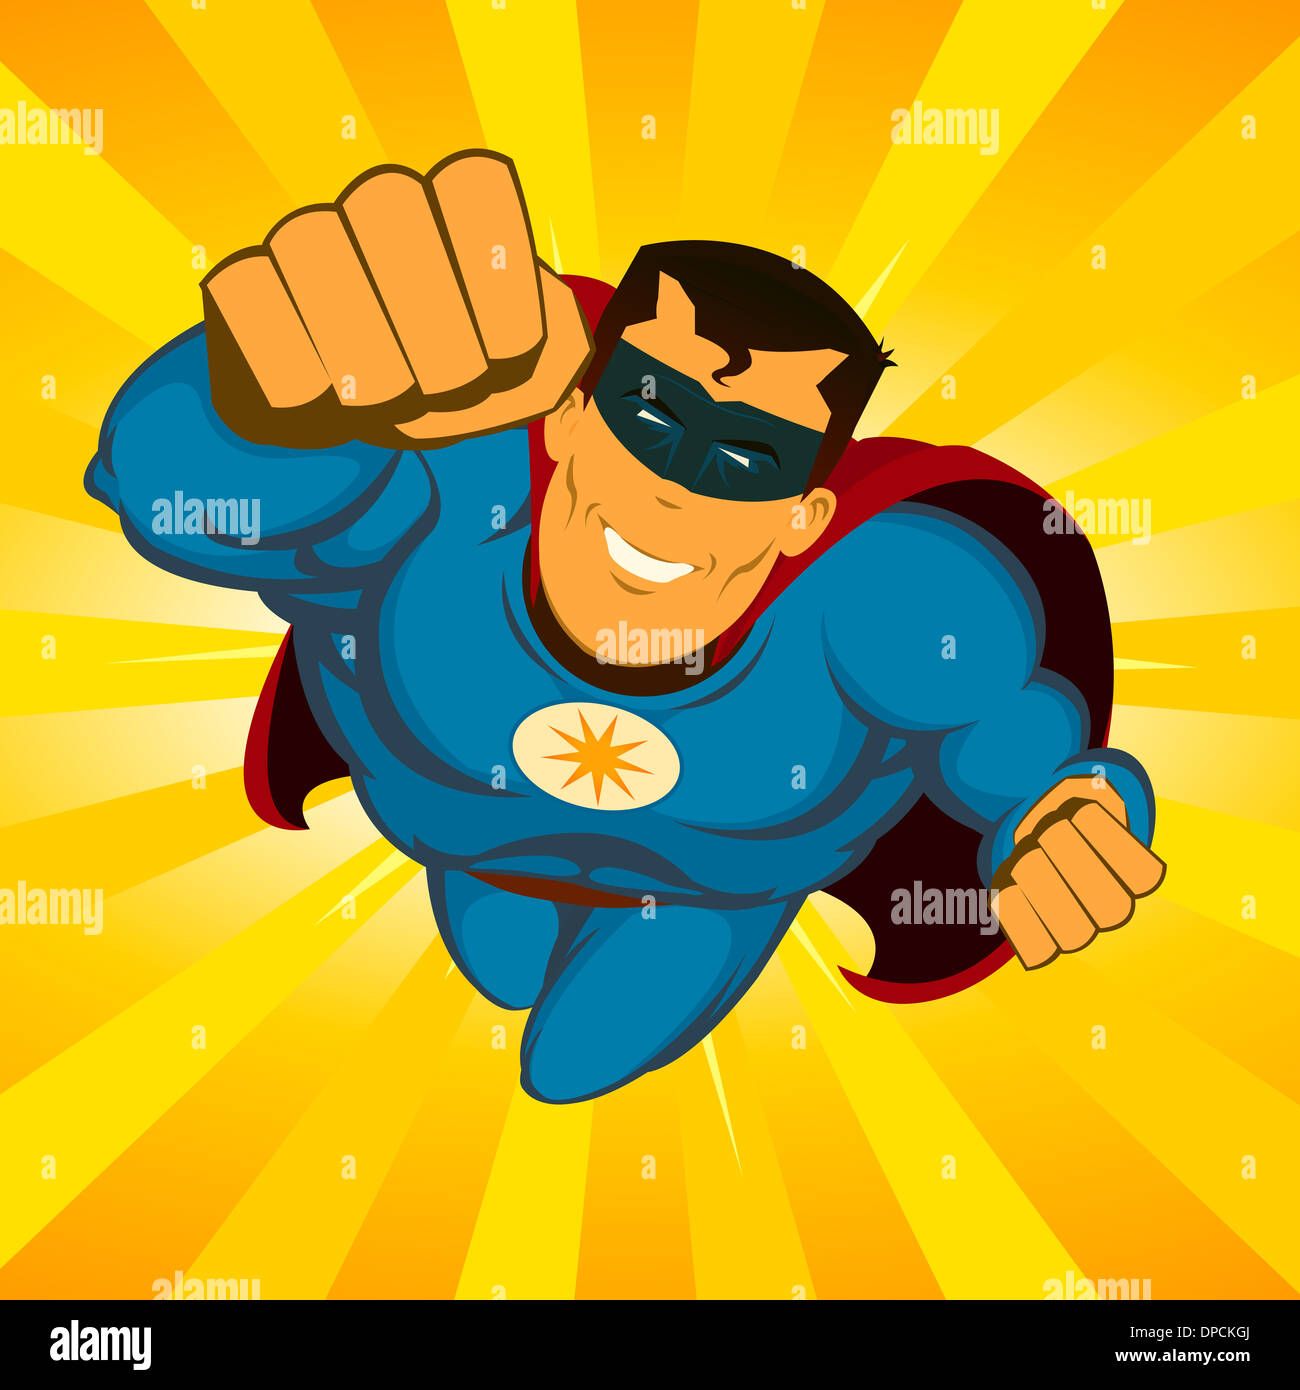 Ilustración de un poderoso héroe de cómic awesome feliz con disfraz rojo y  azul que volaba con explosión de rayos de sol detrás Fotografía de stock -  Alamy